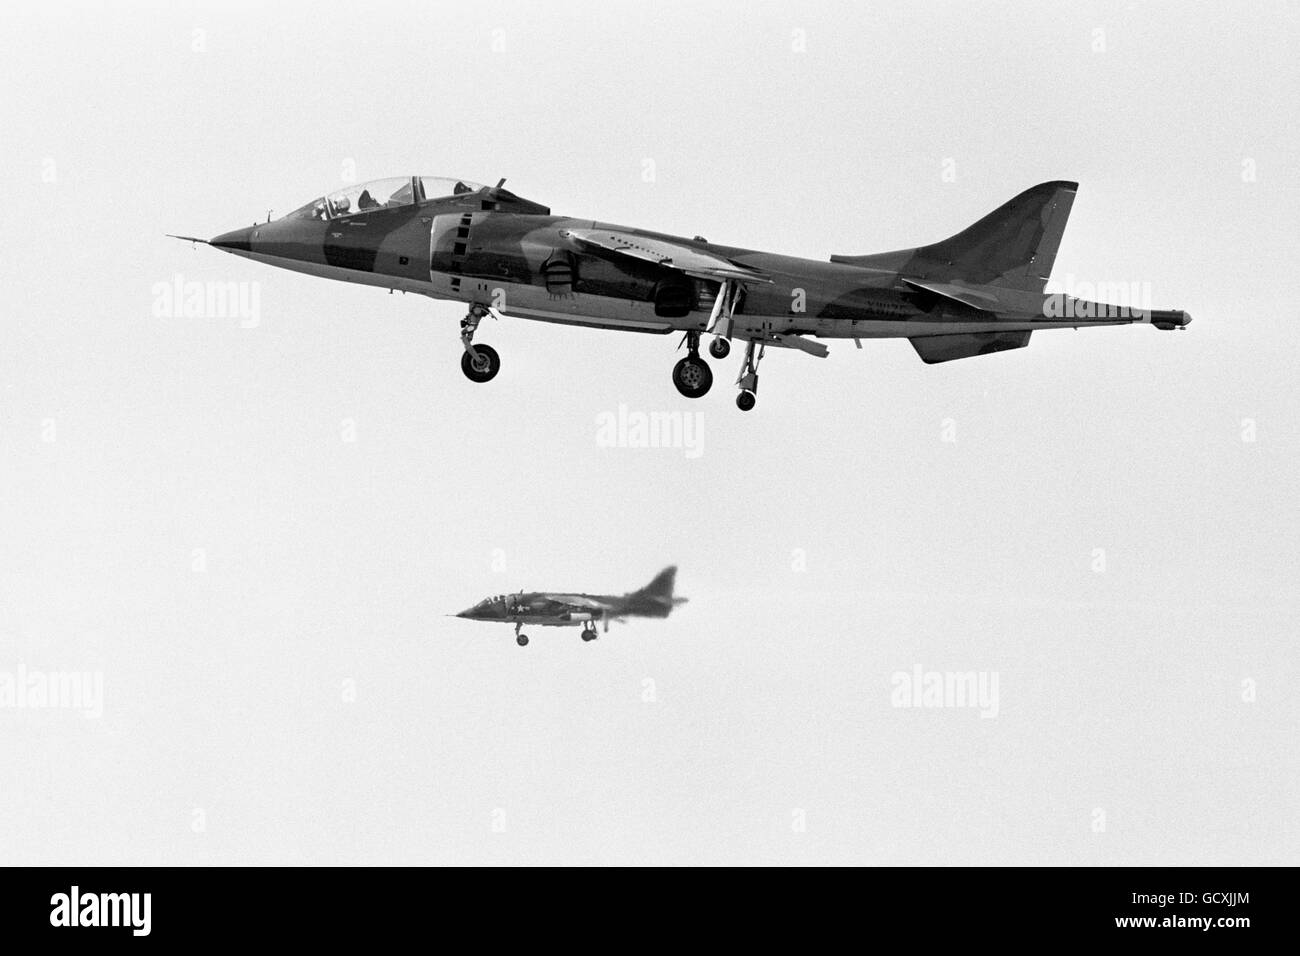 Aviation - Hawker Siddeley Harrier. A Hawker Siddeley Harrier jump jet in flight. Stock Photo